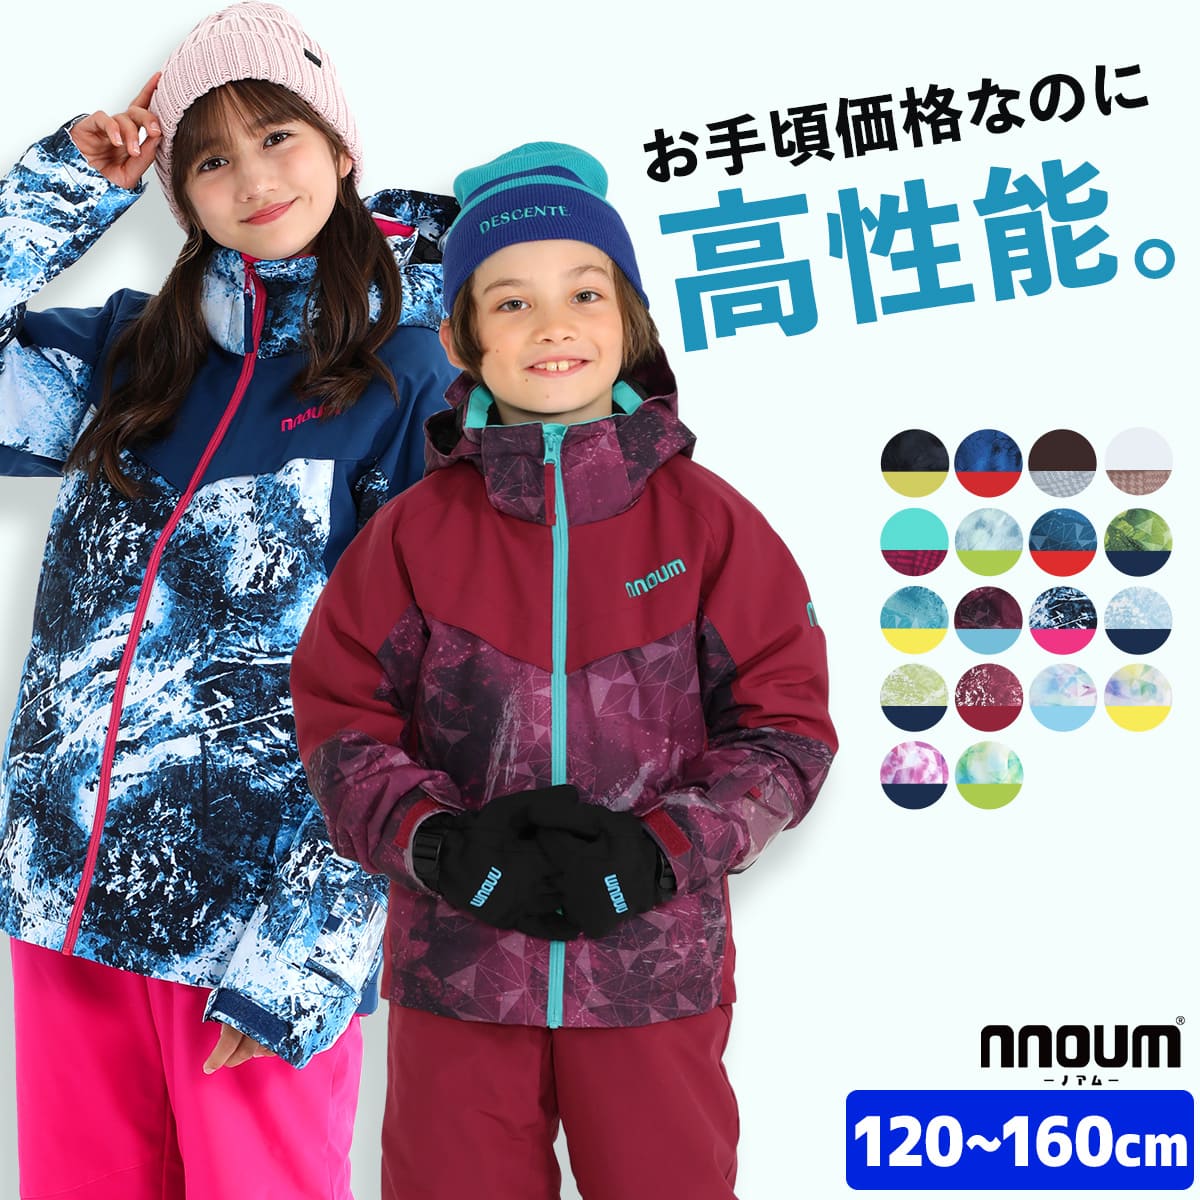  лыжи одежда Kids Junior верх и низ в комплекте зимняя одежда одежда для сноуборда NNOUM Noah m детский мужчина девочка размер регулировка 120 130 140 150 160